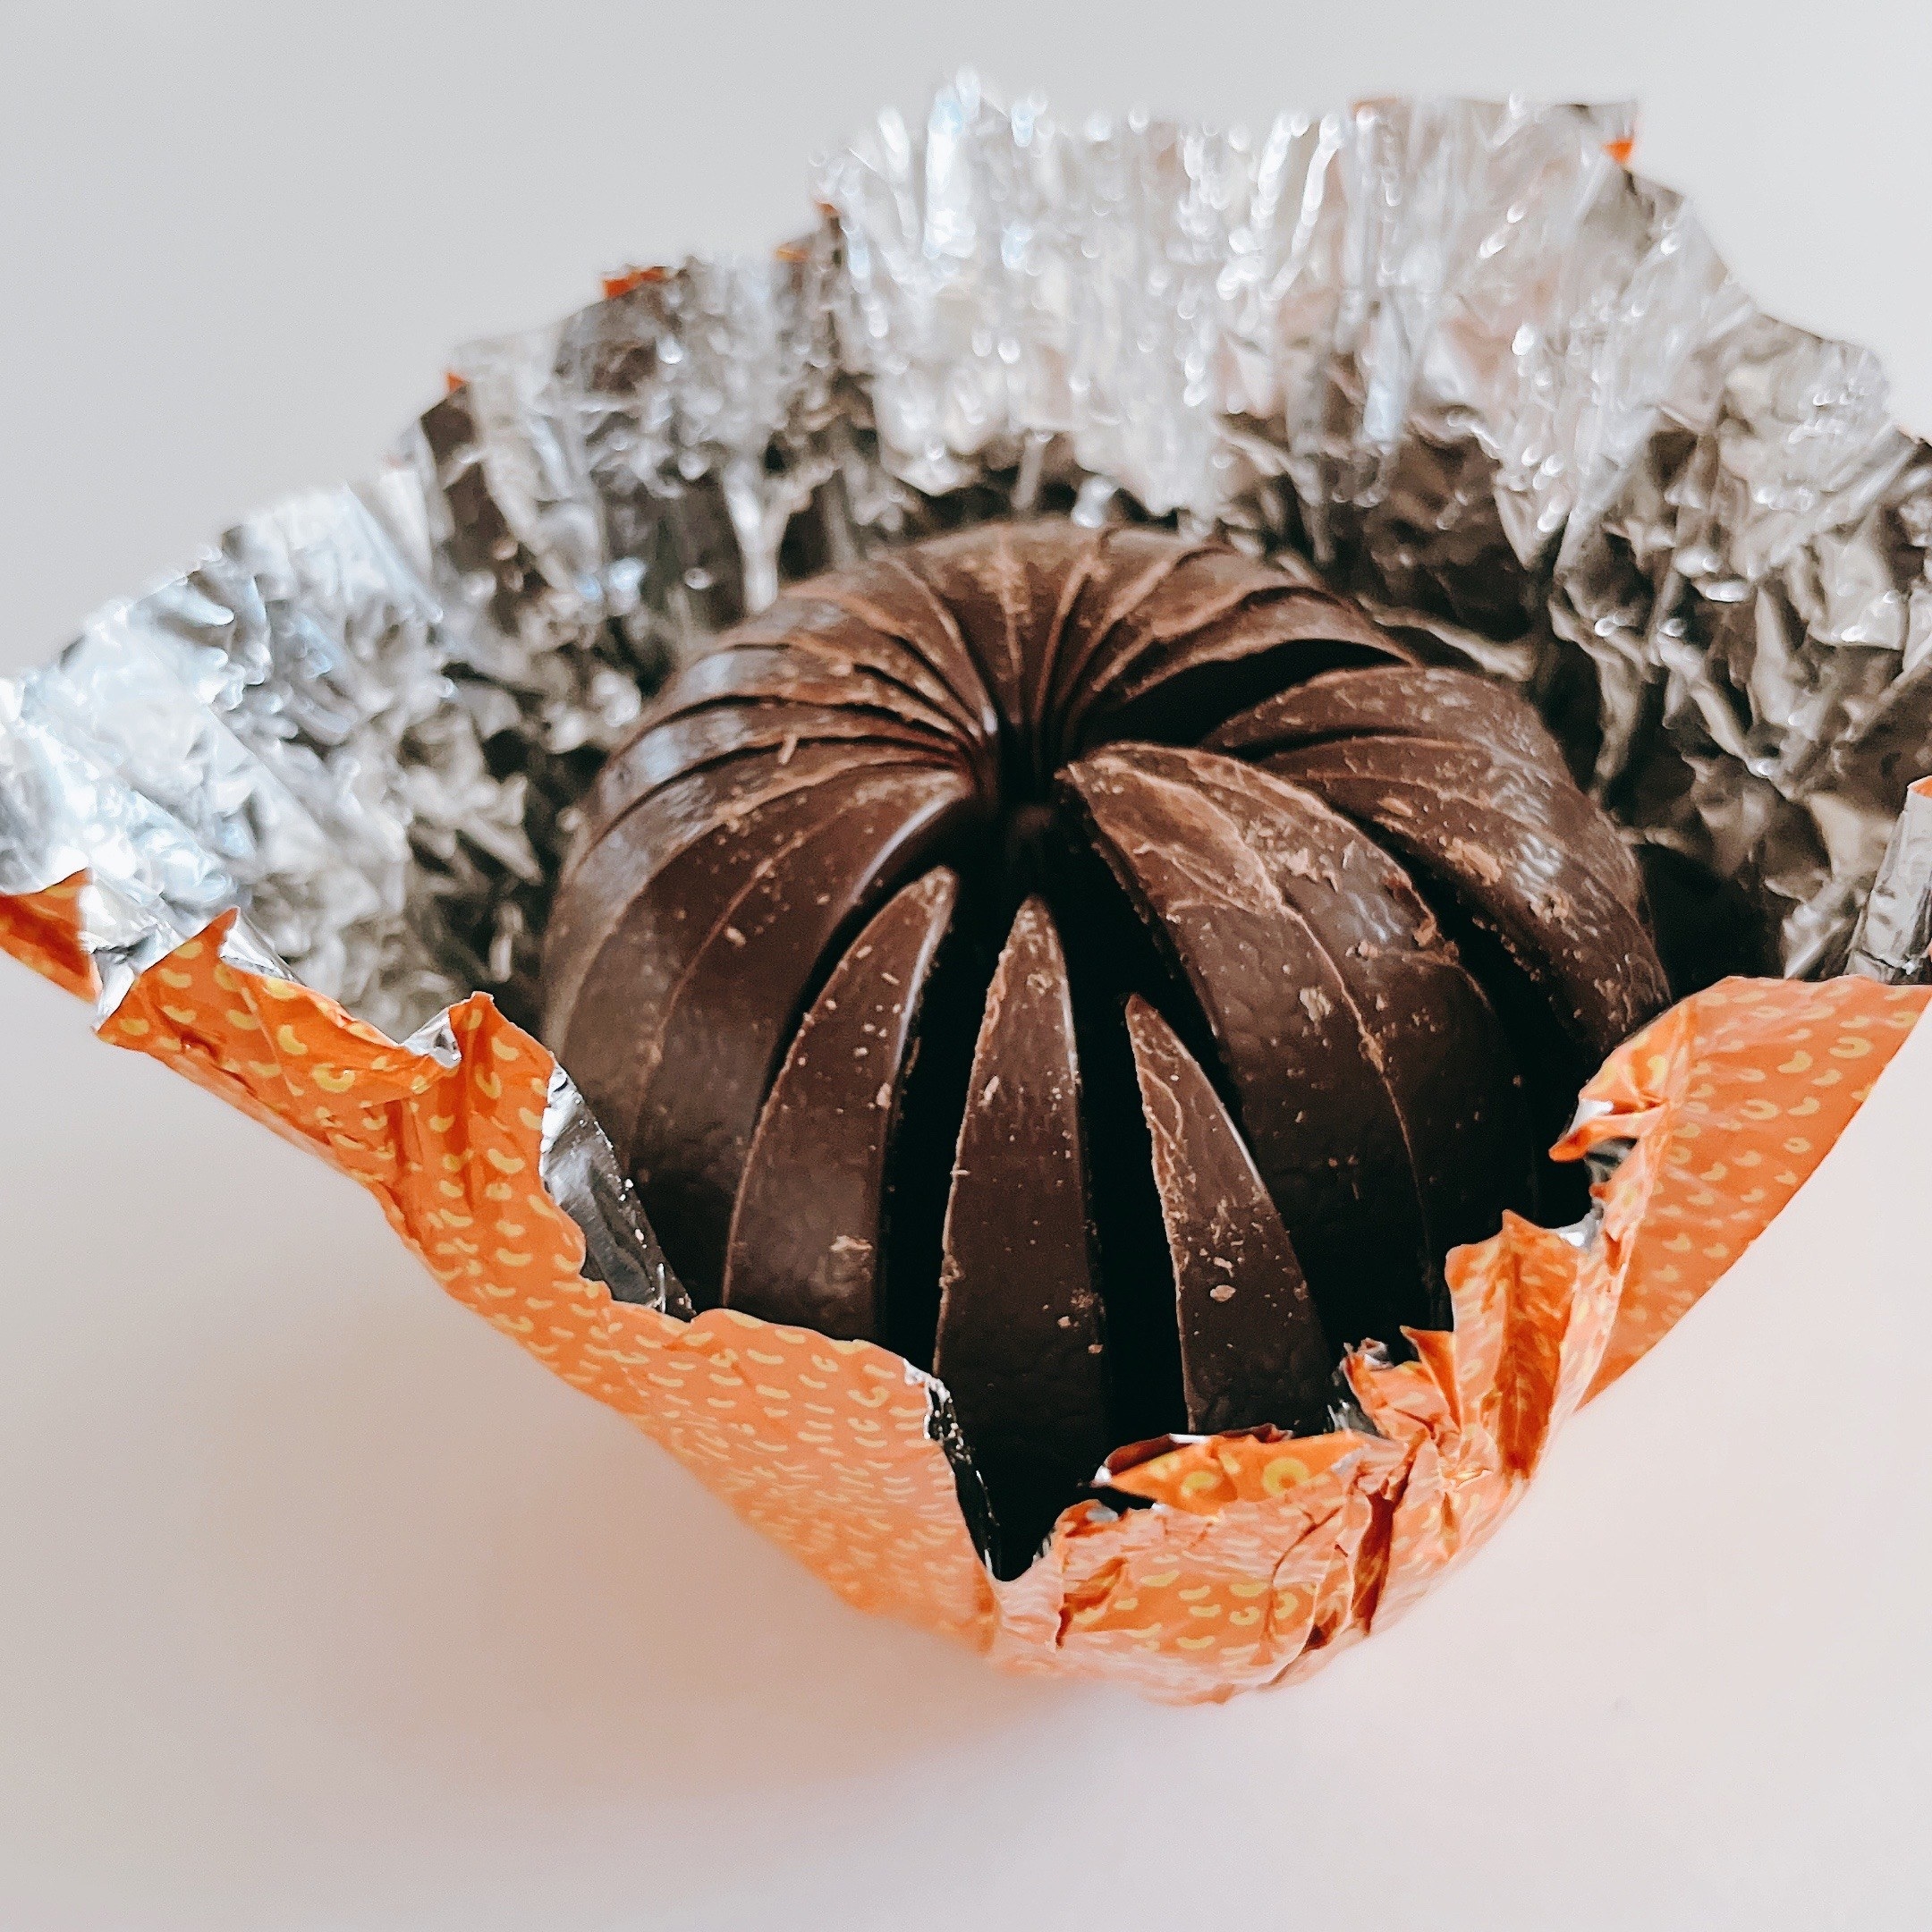 KALDI（カルディ）のおすすめ「テリーズ チョコレート オレンジ ダーク」